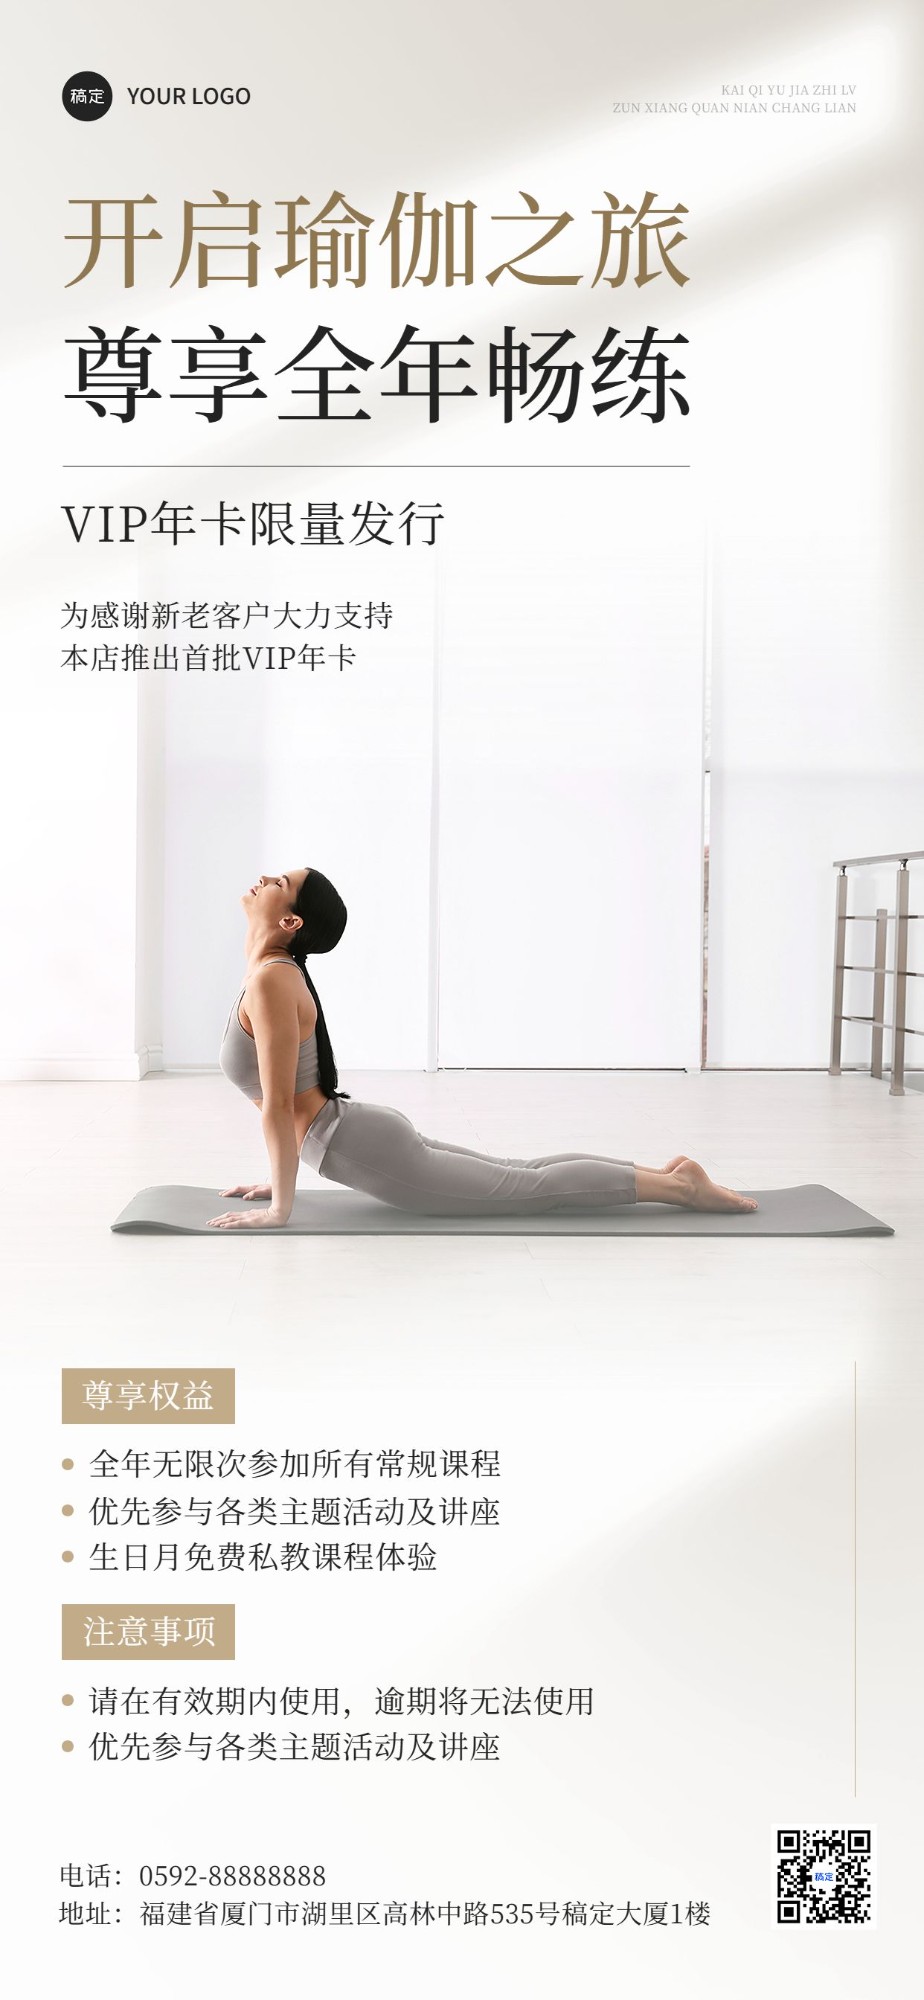 生活服务瑜伽美业卡项促销全屏竖版海报预览效果